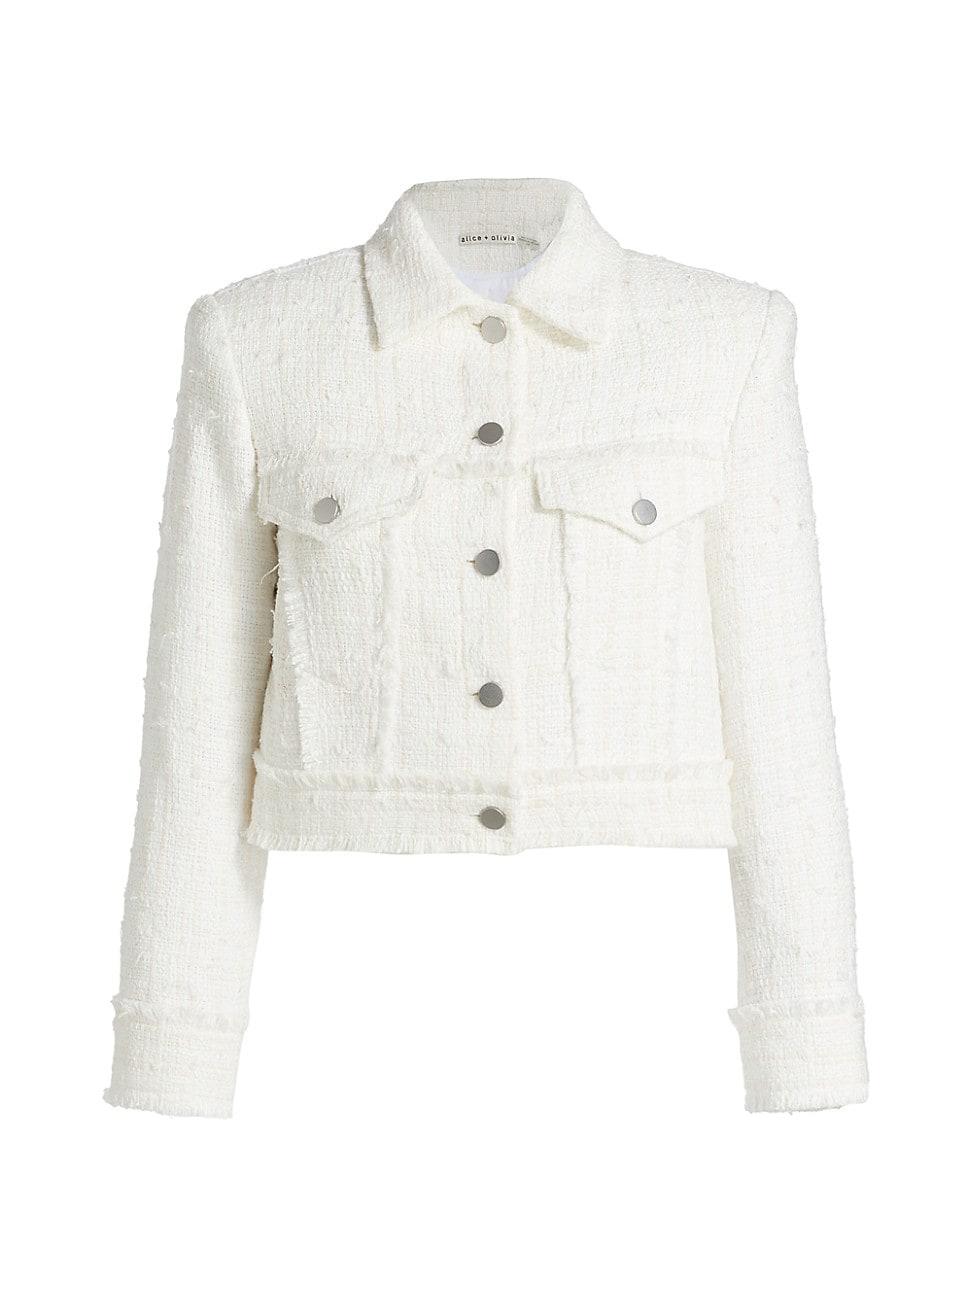 Alice + Olivia Chloe Tweed Crop Jacket in White | Lyst